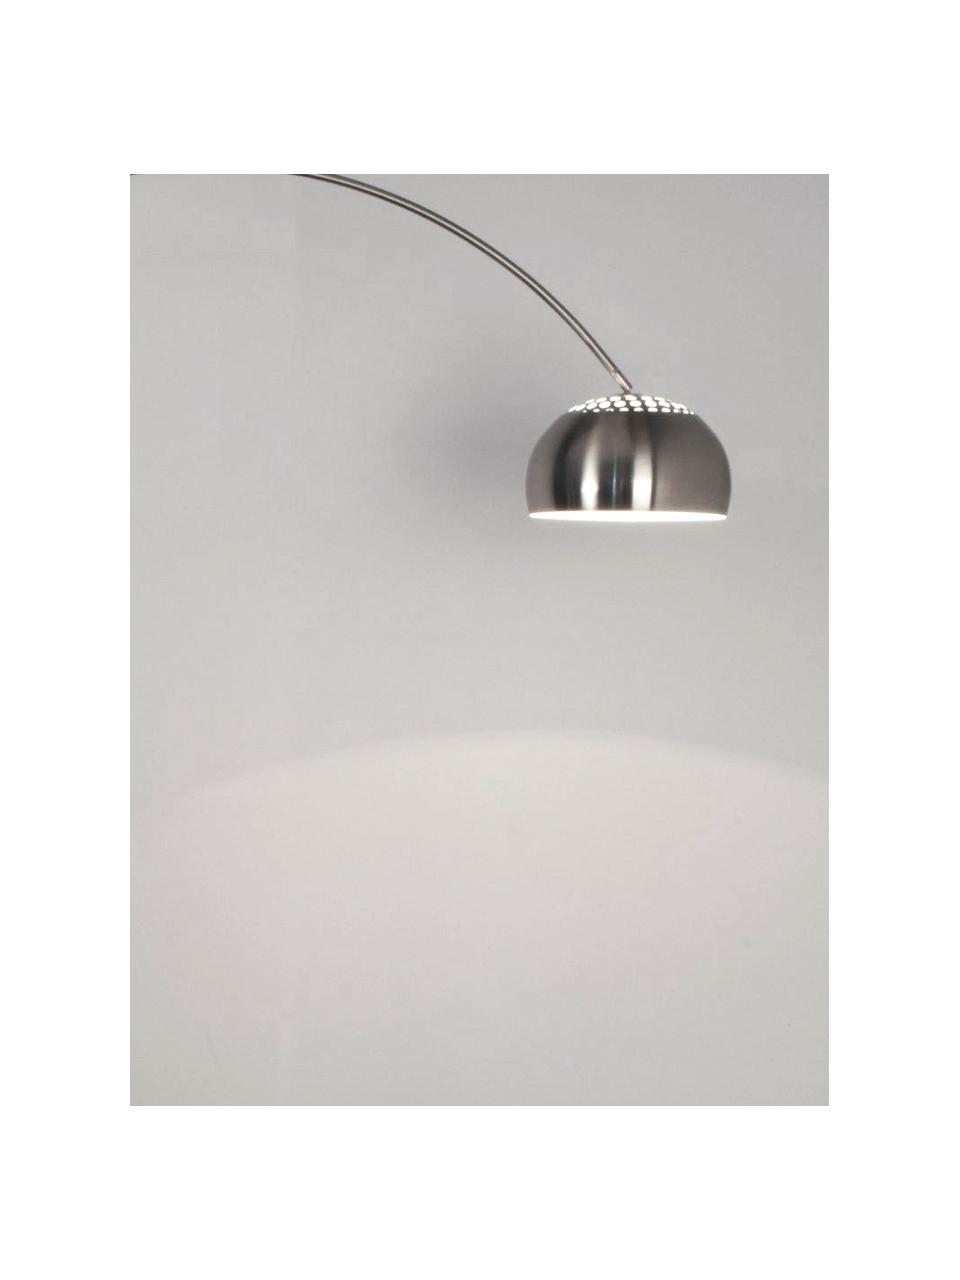 Grote booglamp Metal Bow in zilverkleur, Lampenkap: geborsteld metaal, Frame: geborsteld metaal, Lampvoet: steen met verzilverd meta, Metaal, B 170 x H 205 cm